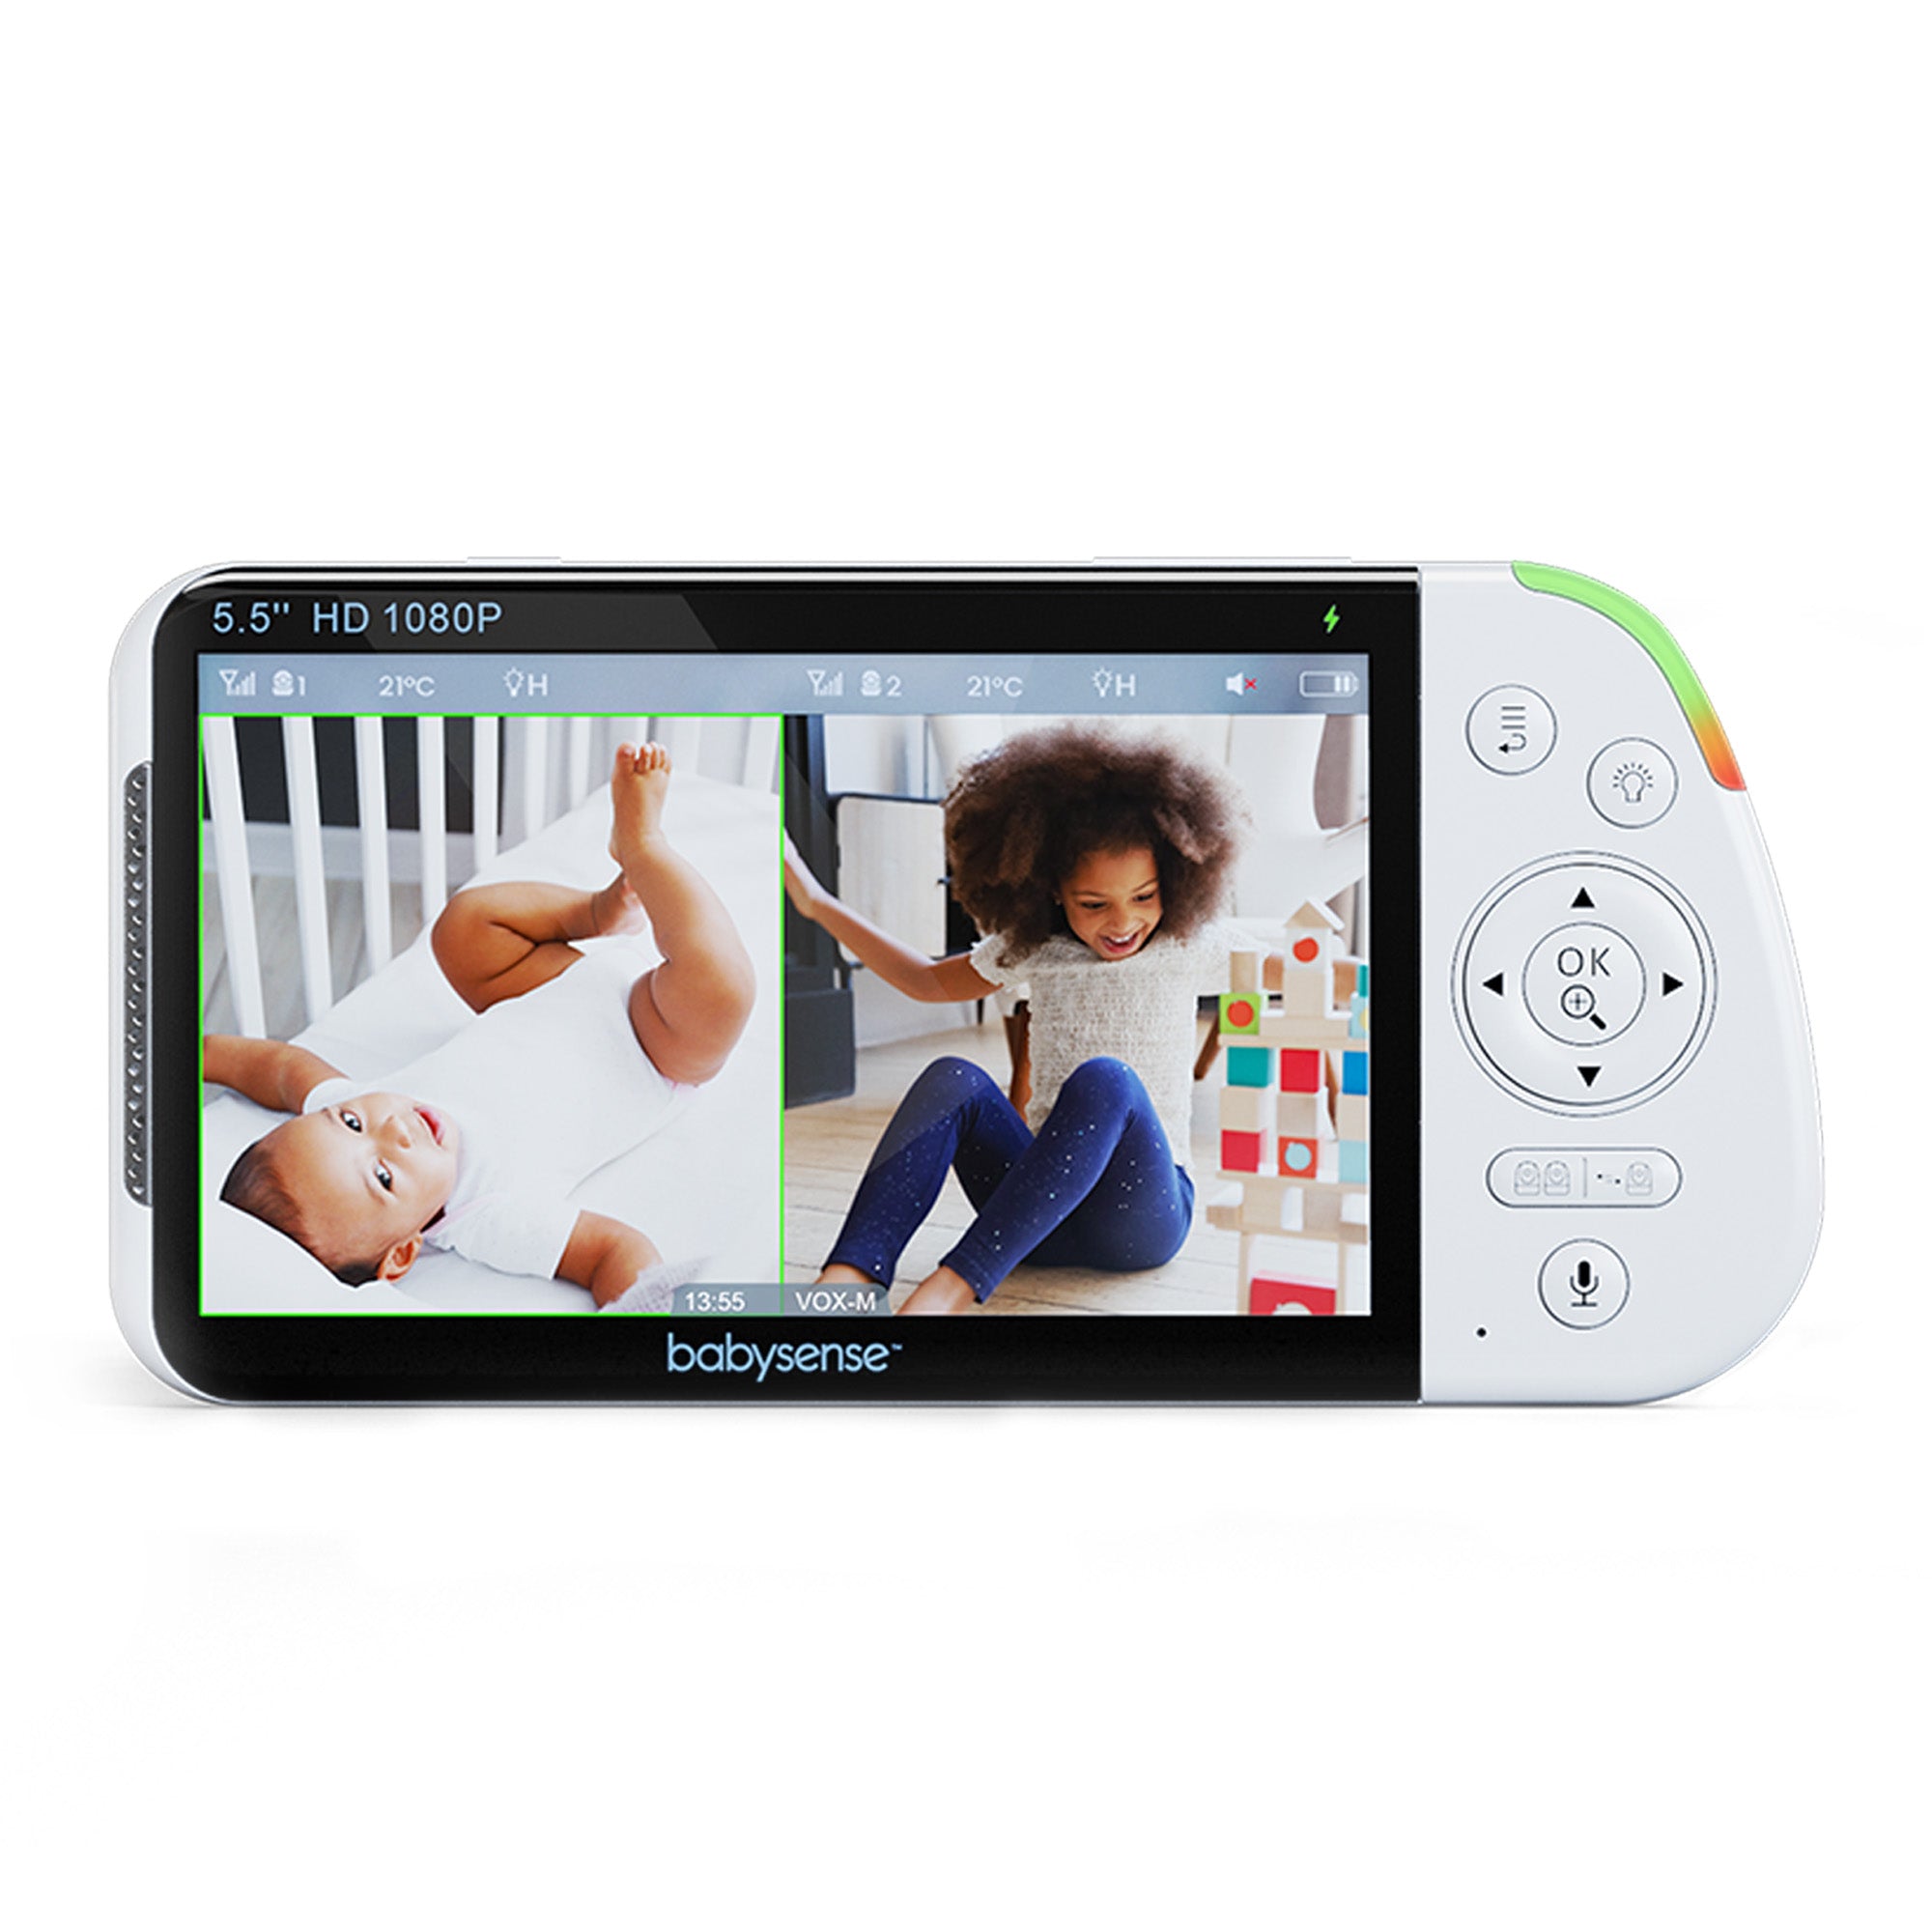 Elterneinheit für 5,5-Zoll-Split-Screen-Video-Babyphone MaxView 